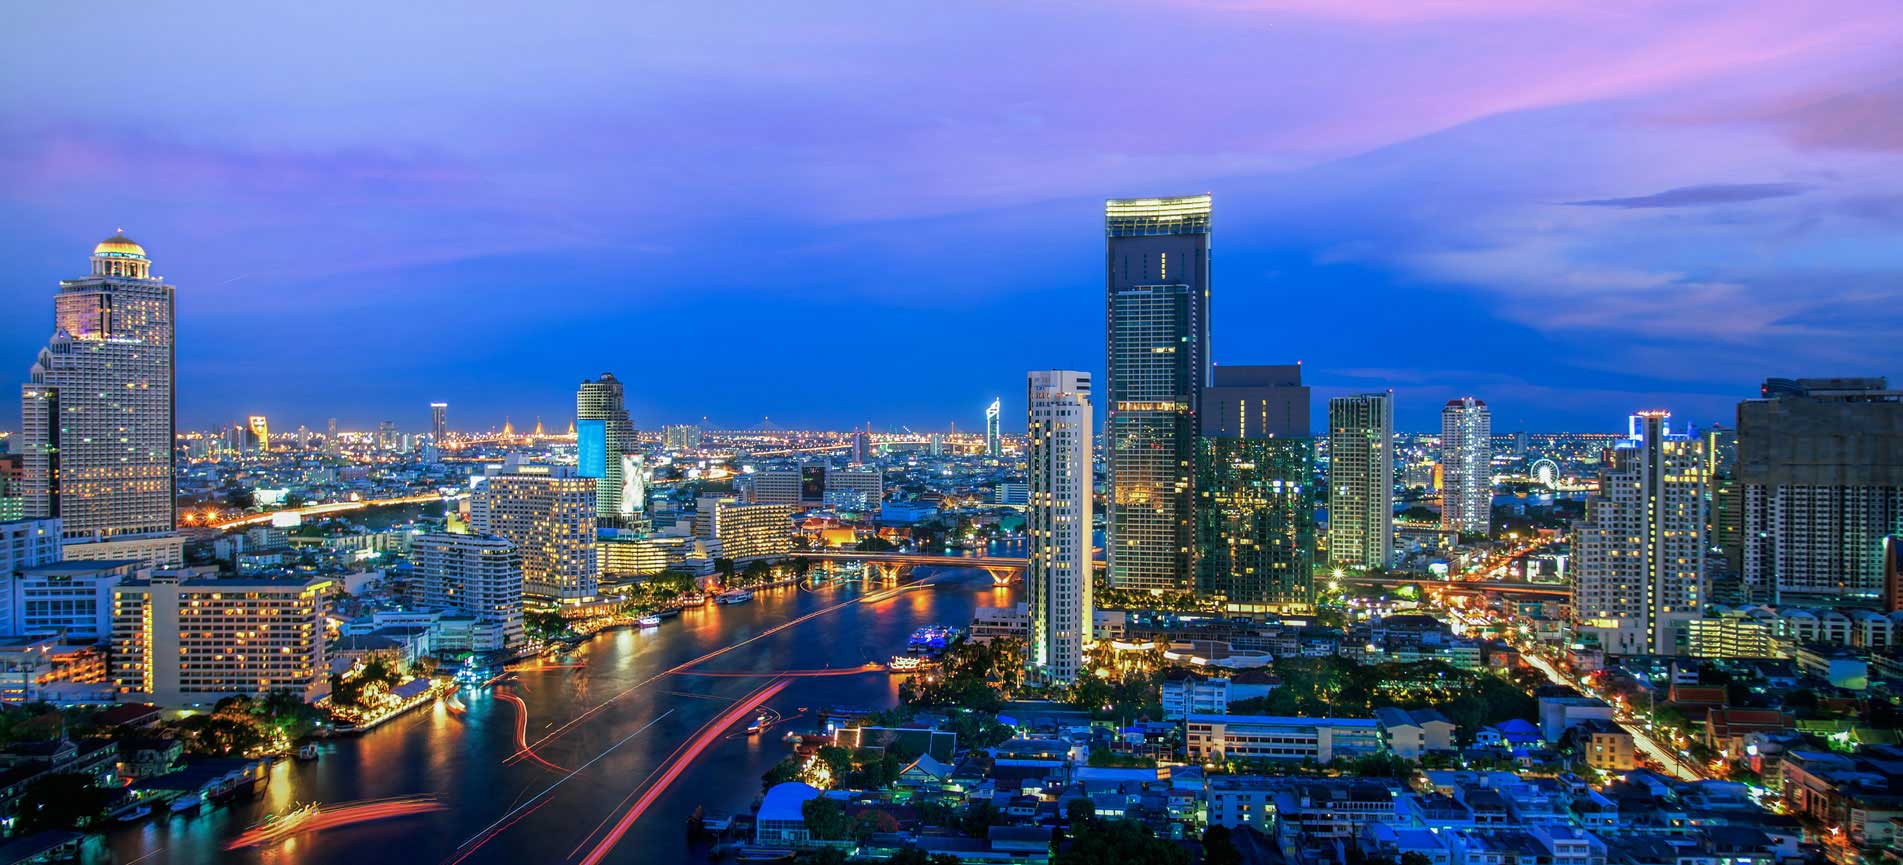 泰國房地產投資及泰國股市投資秘笈大公開！投資新手們必看懶人包 @東南亞投資報告